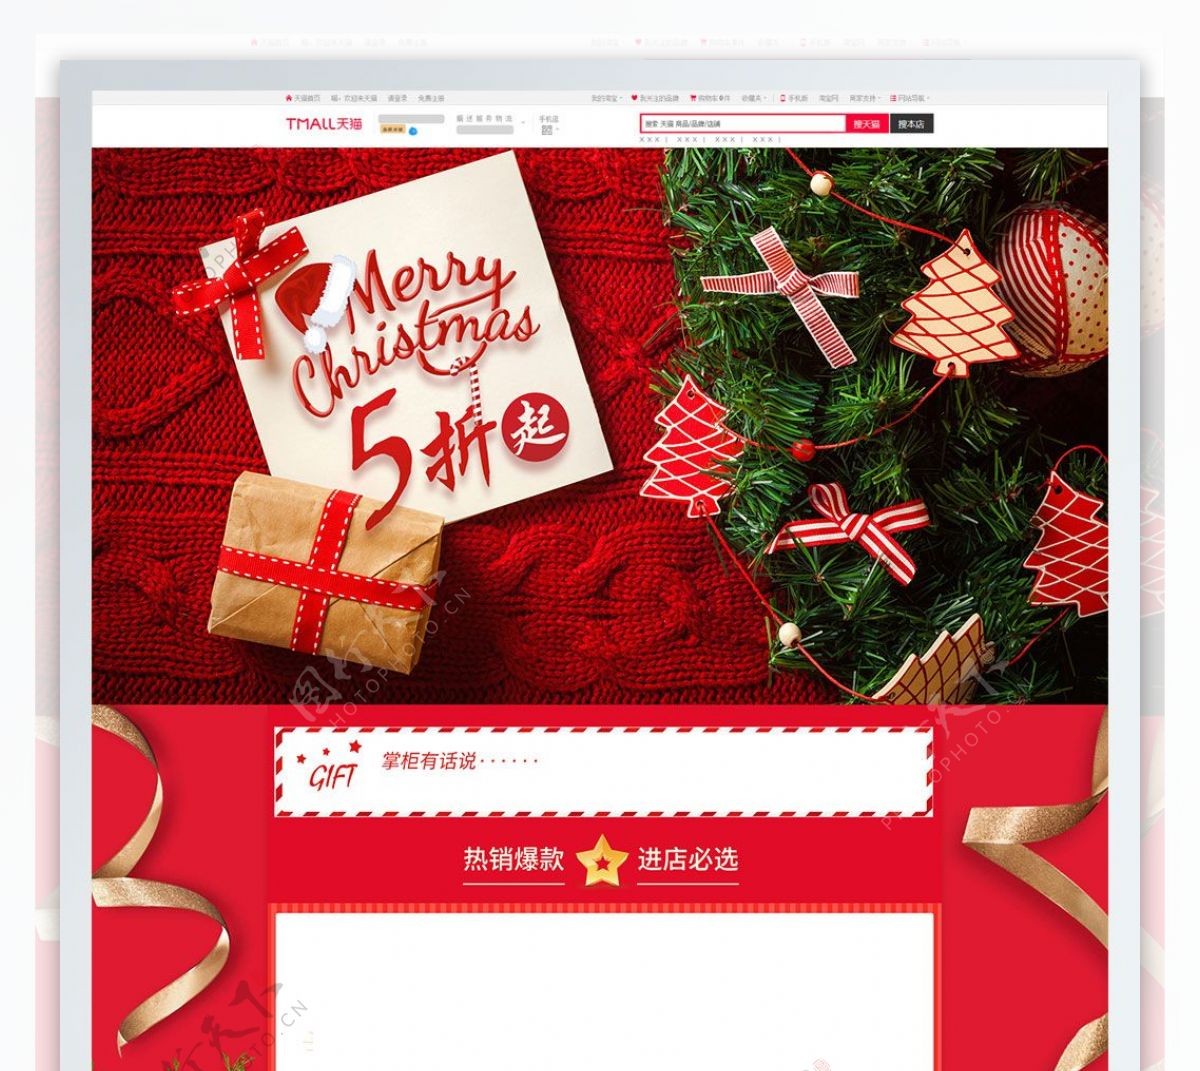 红色喜庆礼盒圣诞节电商淘宝活动页首页模板